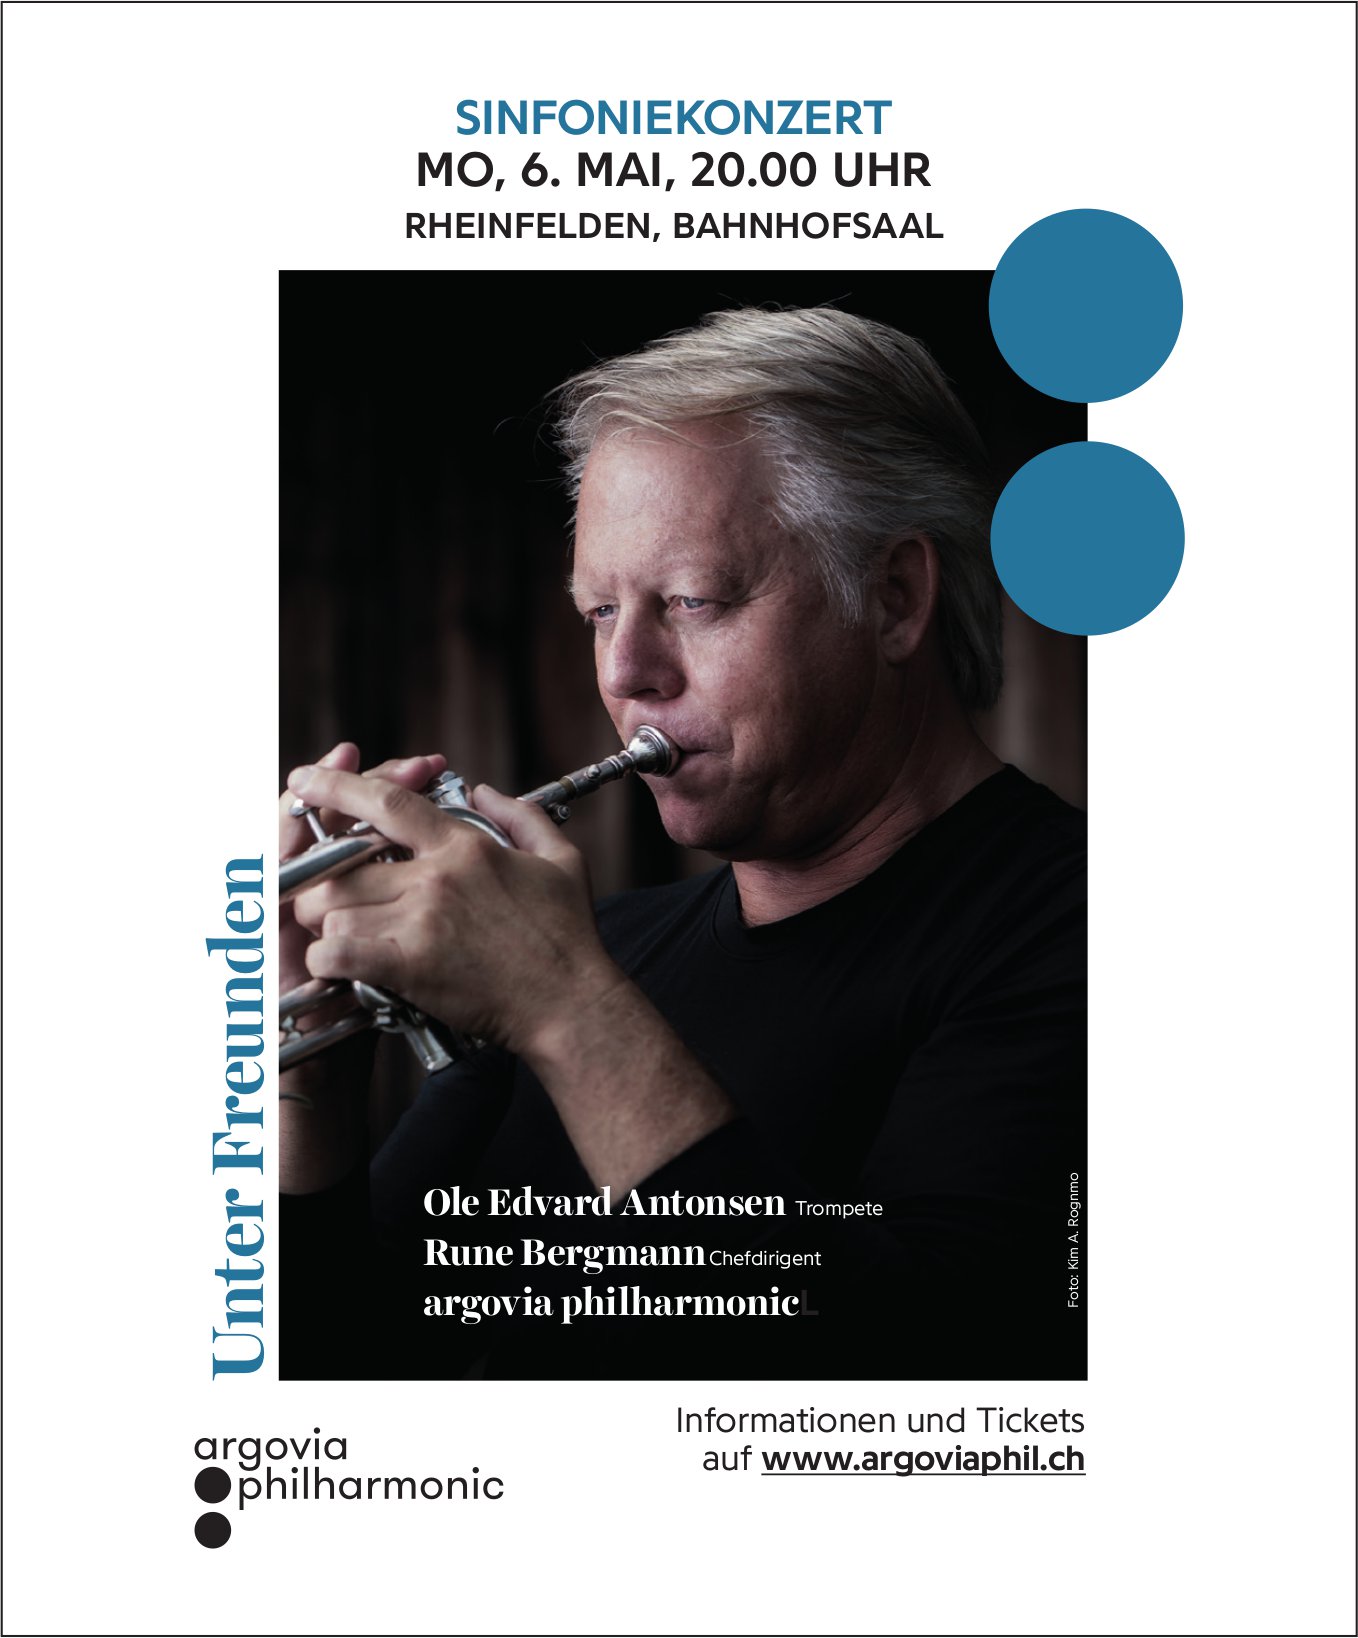 Sinfoniekonzert, 6. Mai, Bahnhofsaal, Rheinfelden